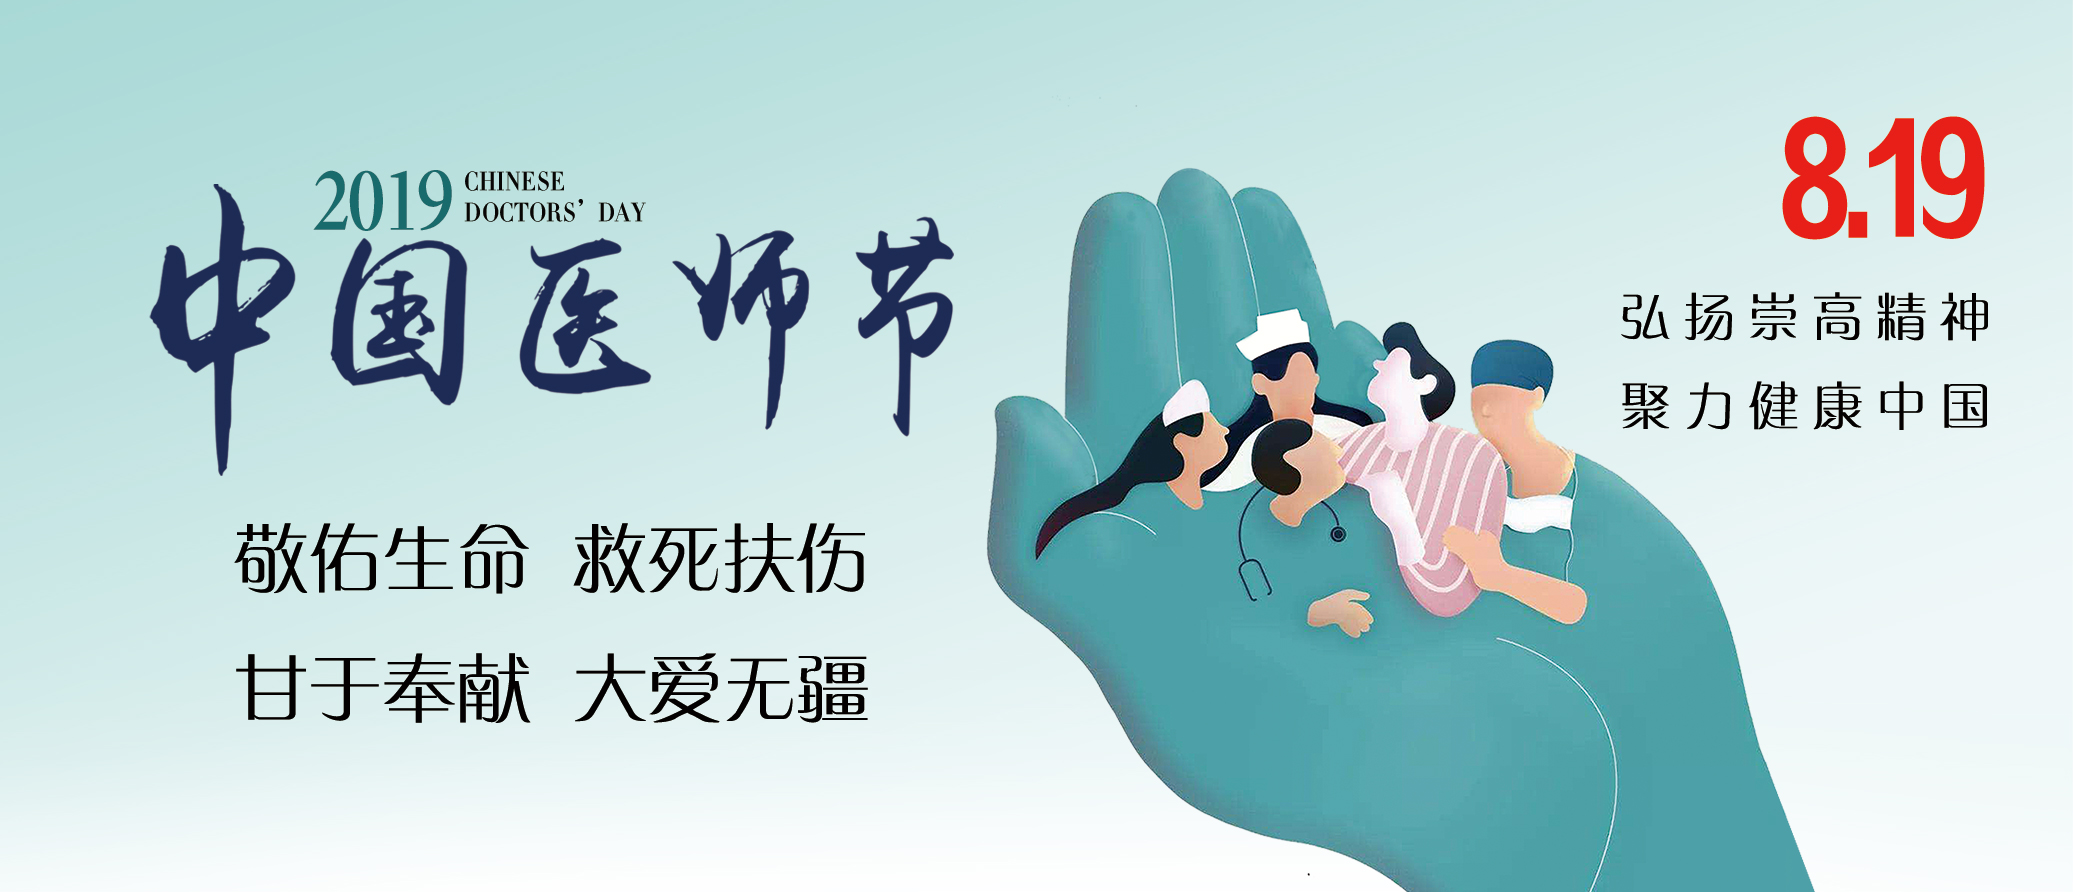 中国医师节︱致敬生命的守护者